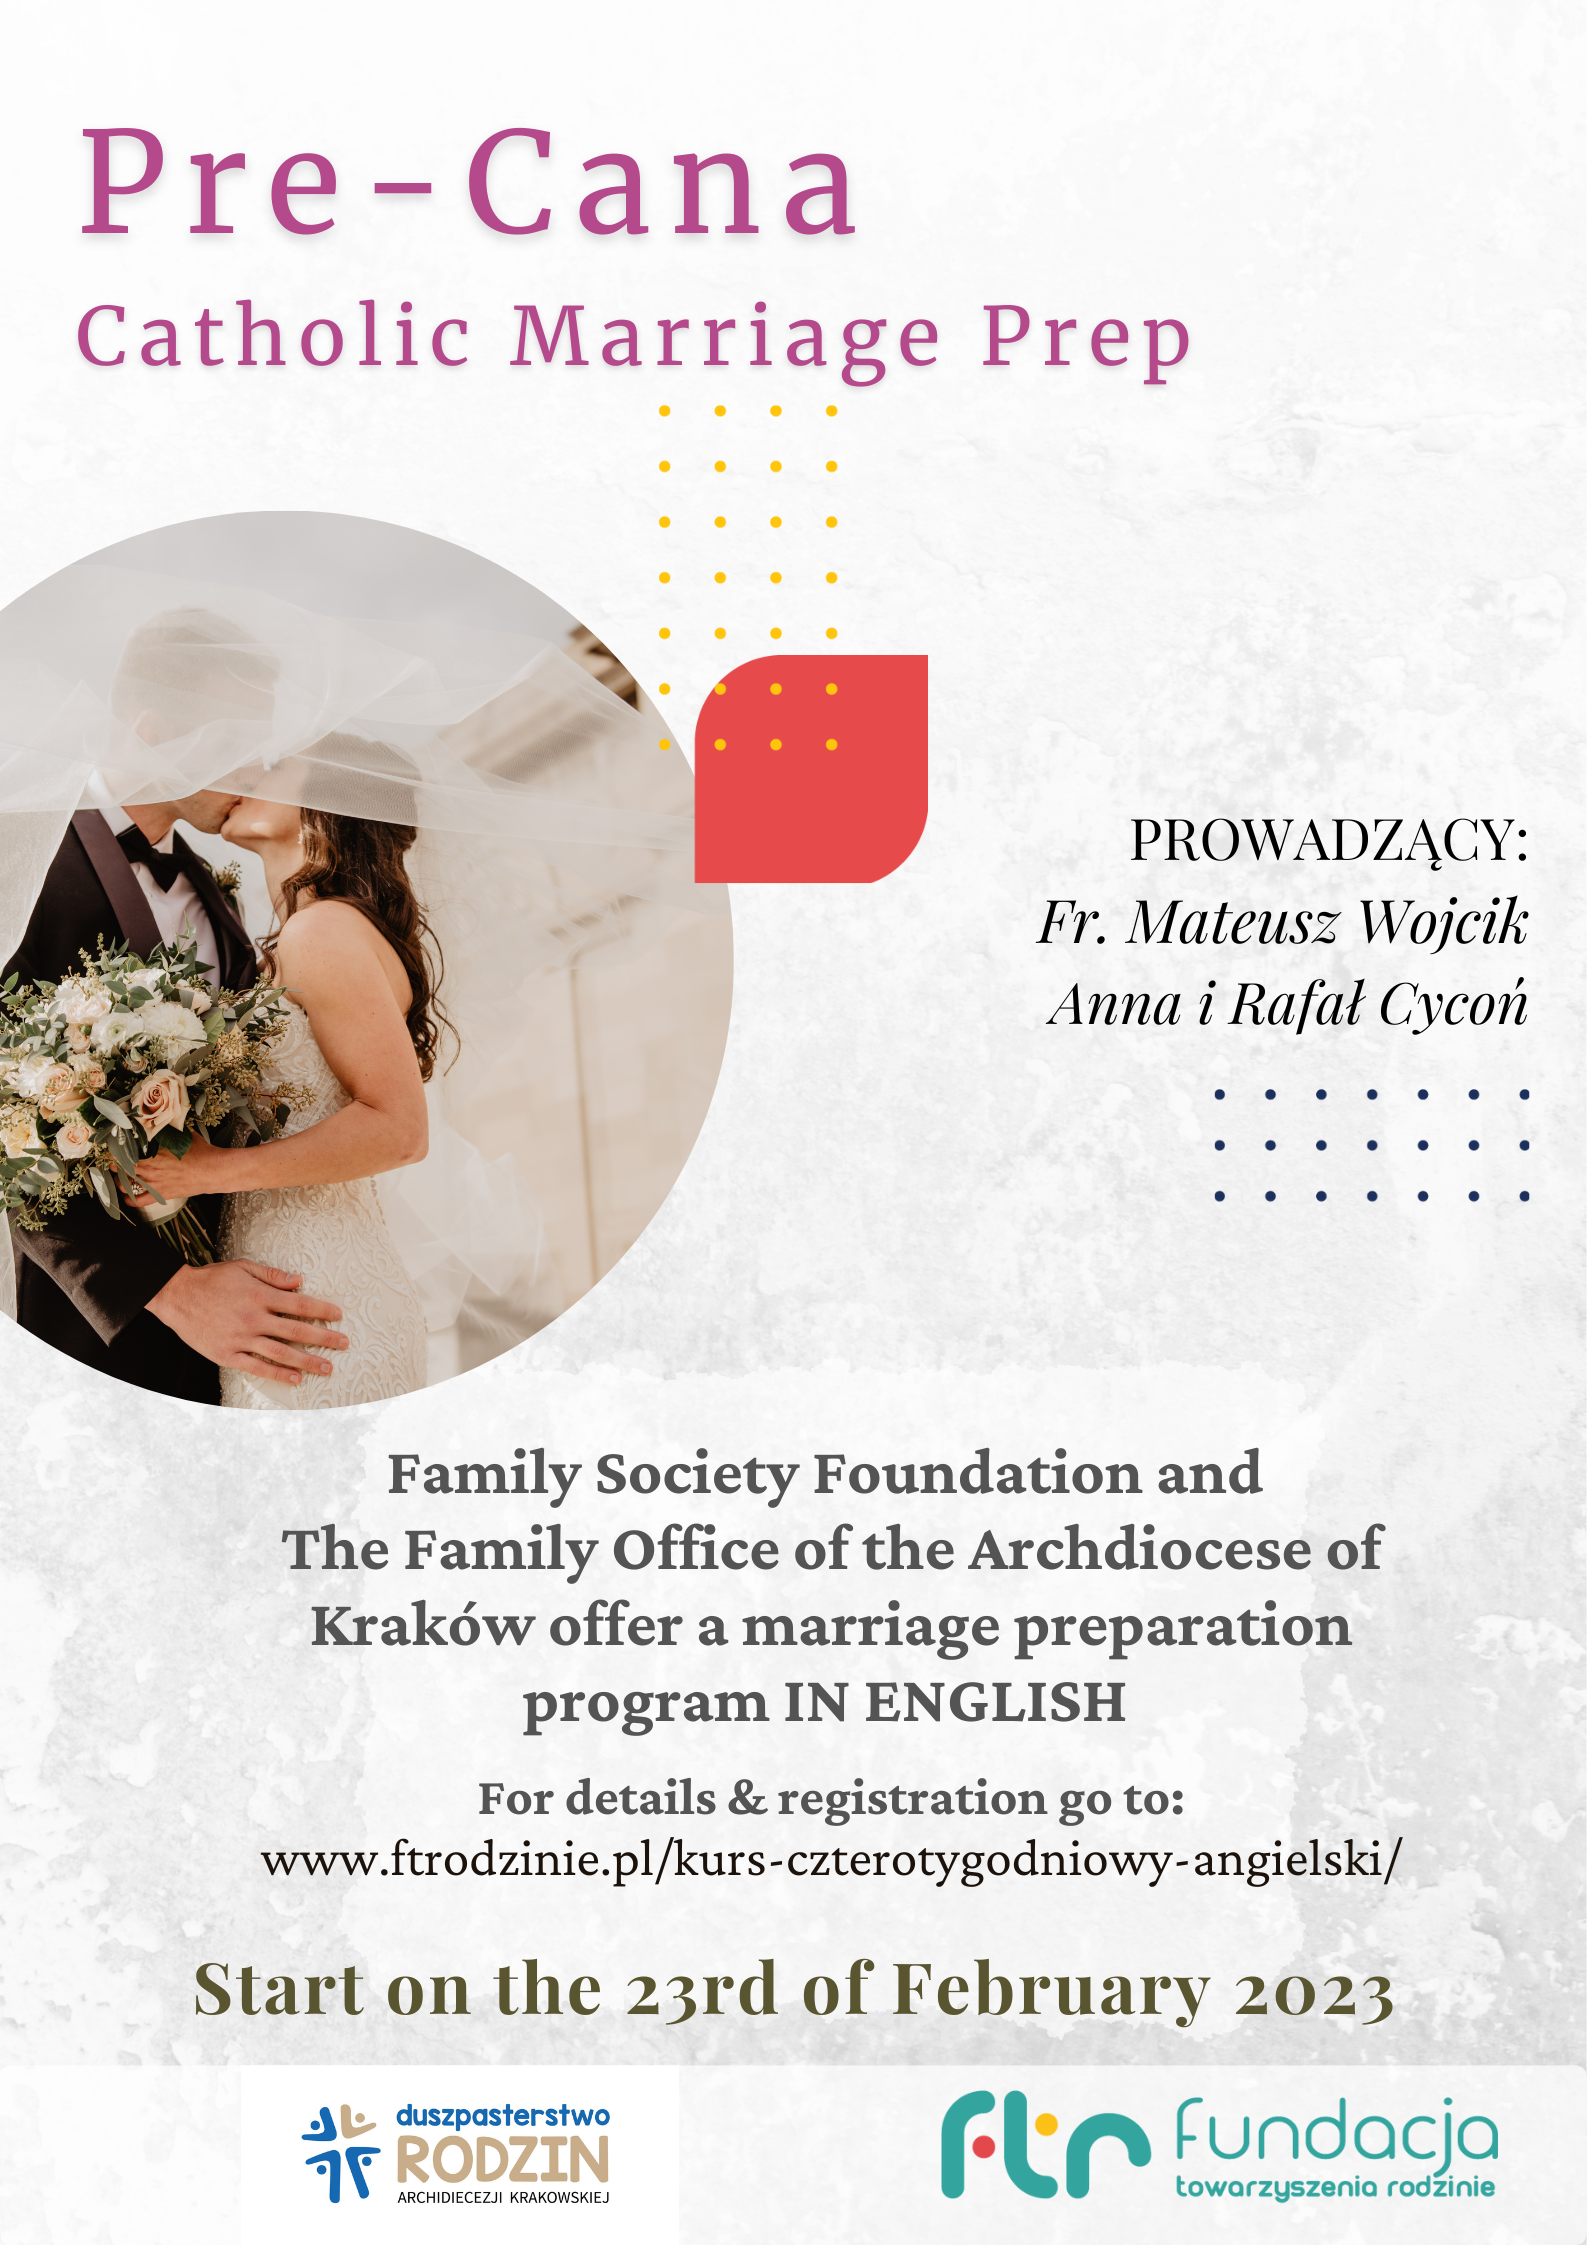 Pre-cana catholic marriage prep